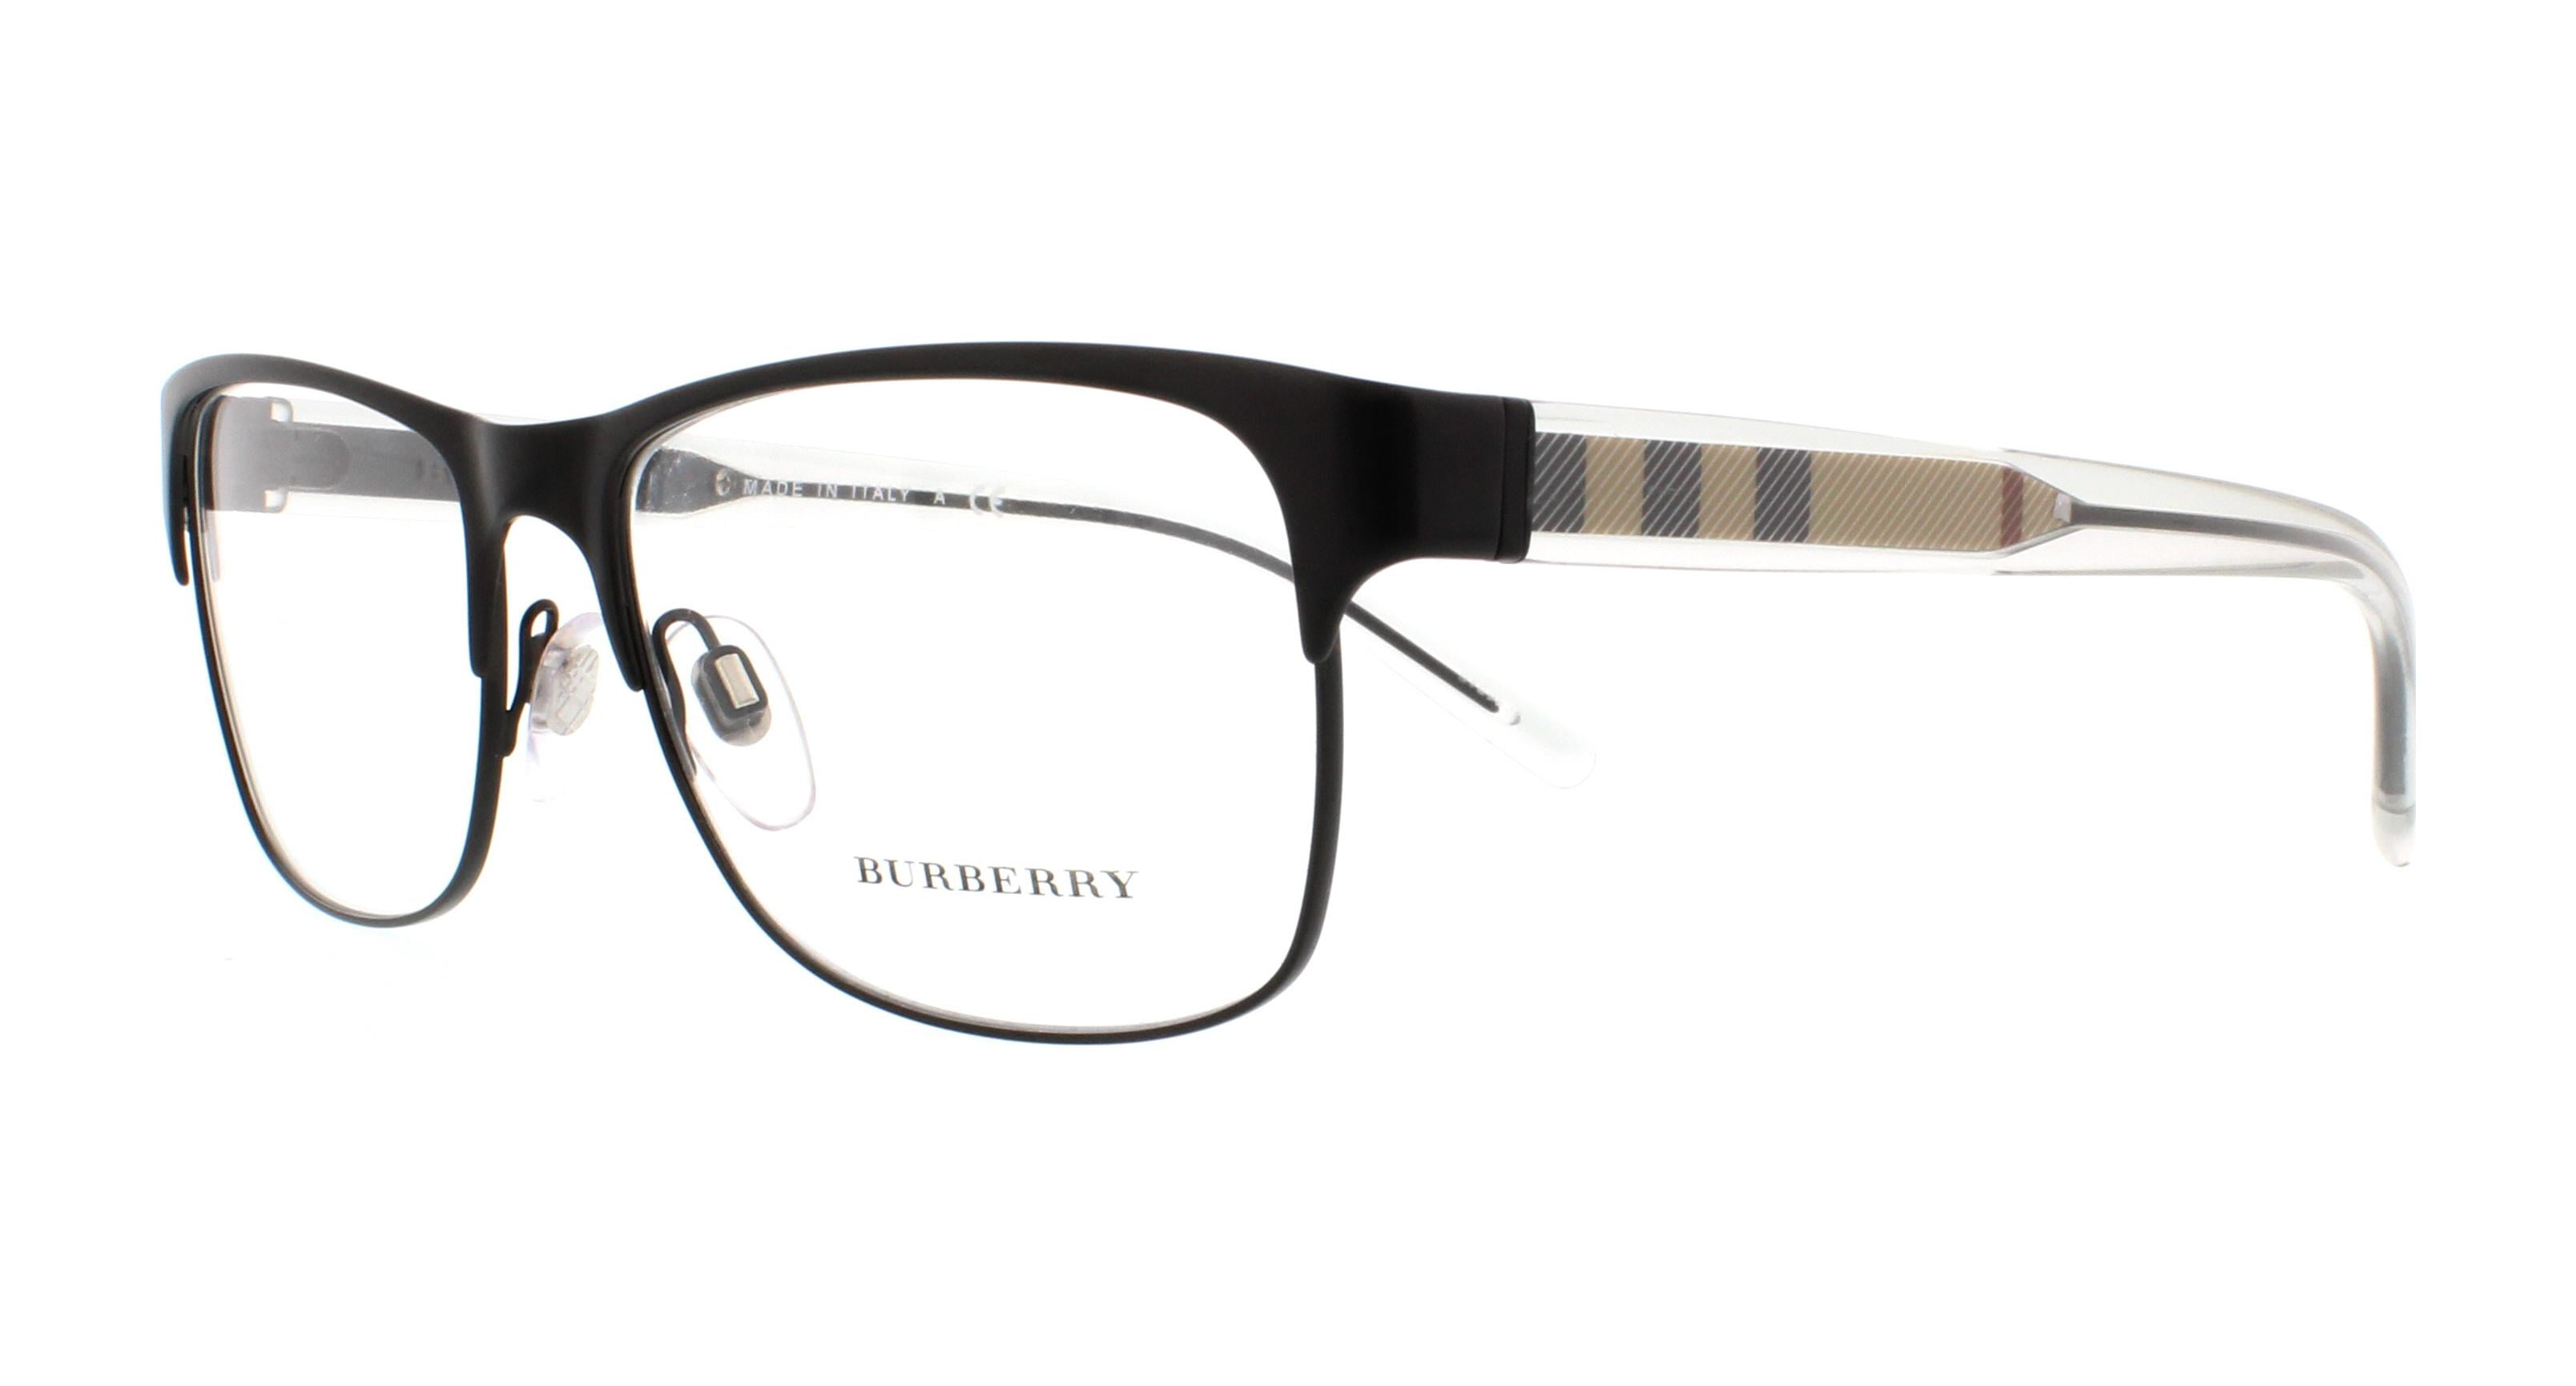 burberry frames for men